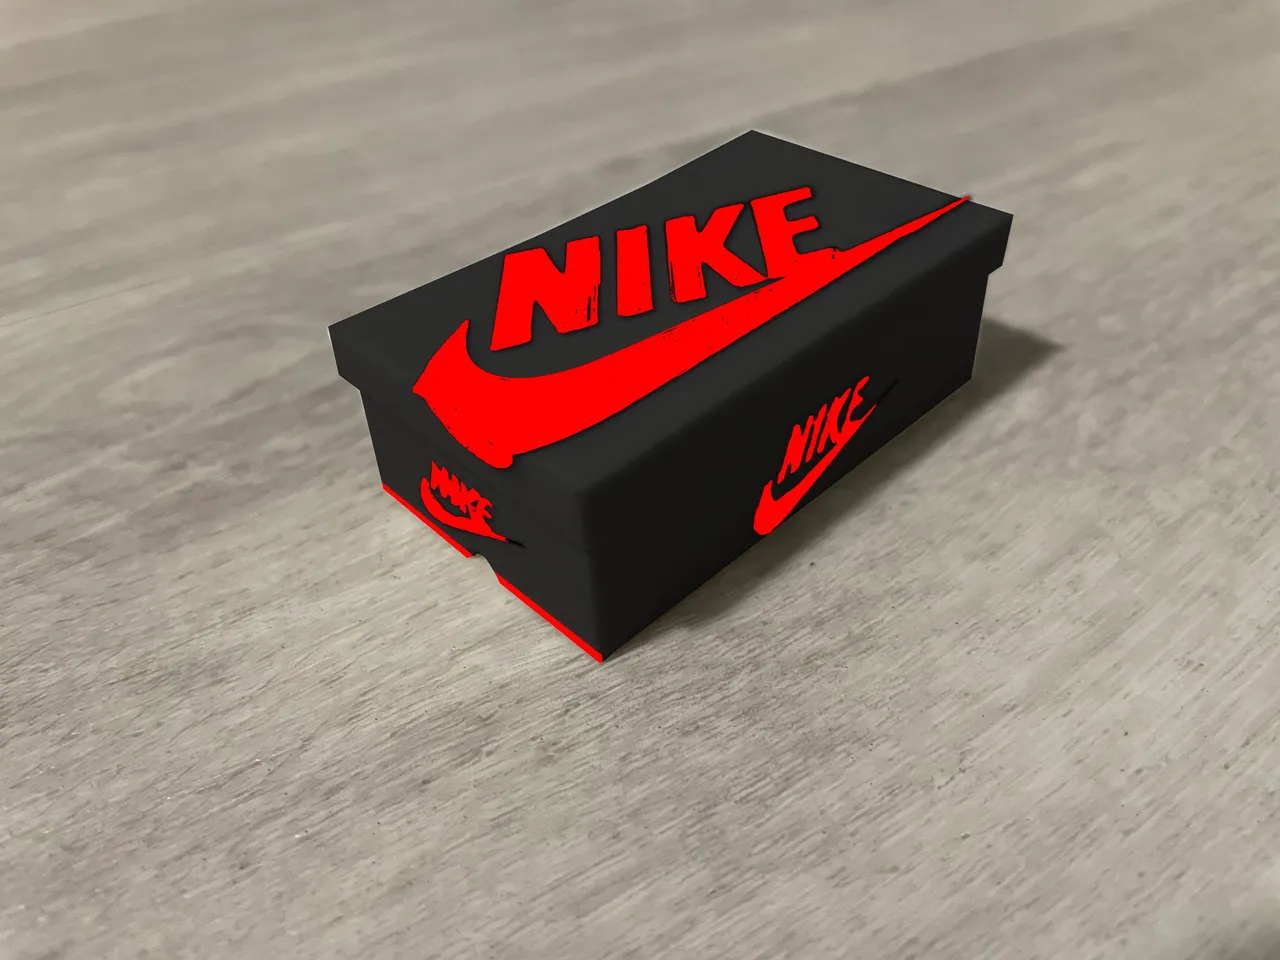 Nike Jordan 1 box by DanDi | Download 